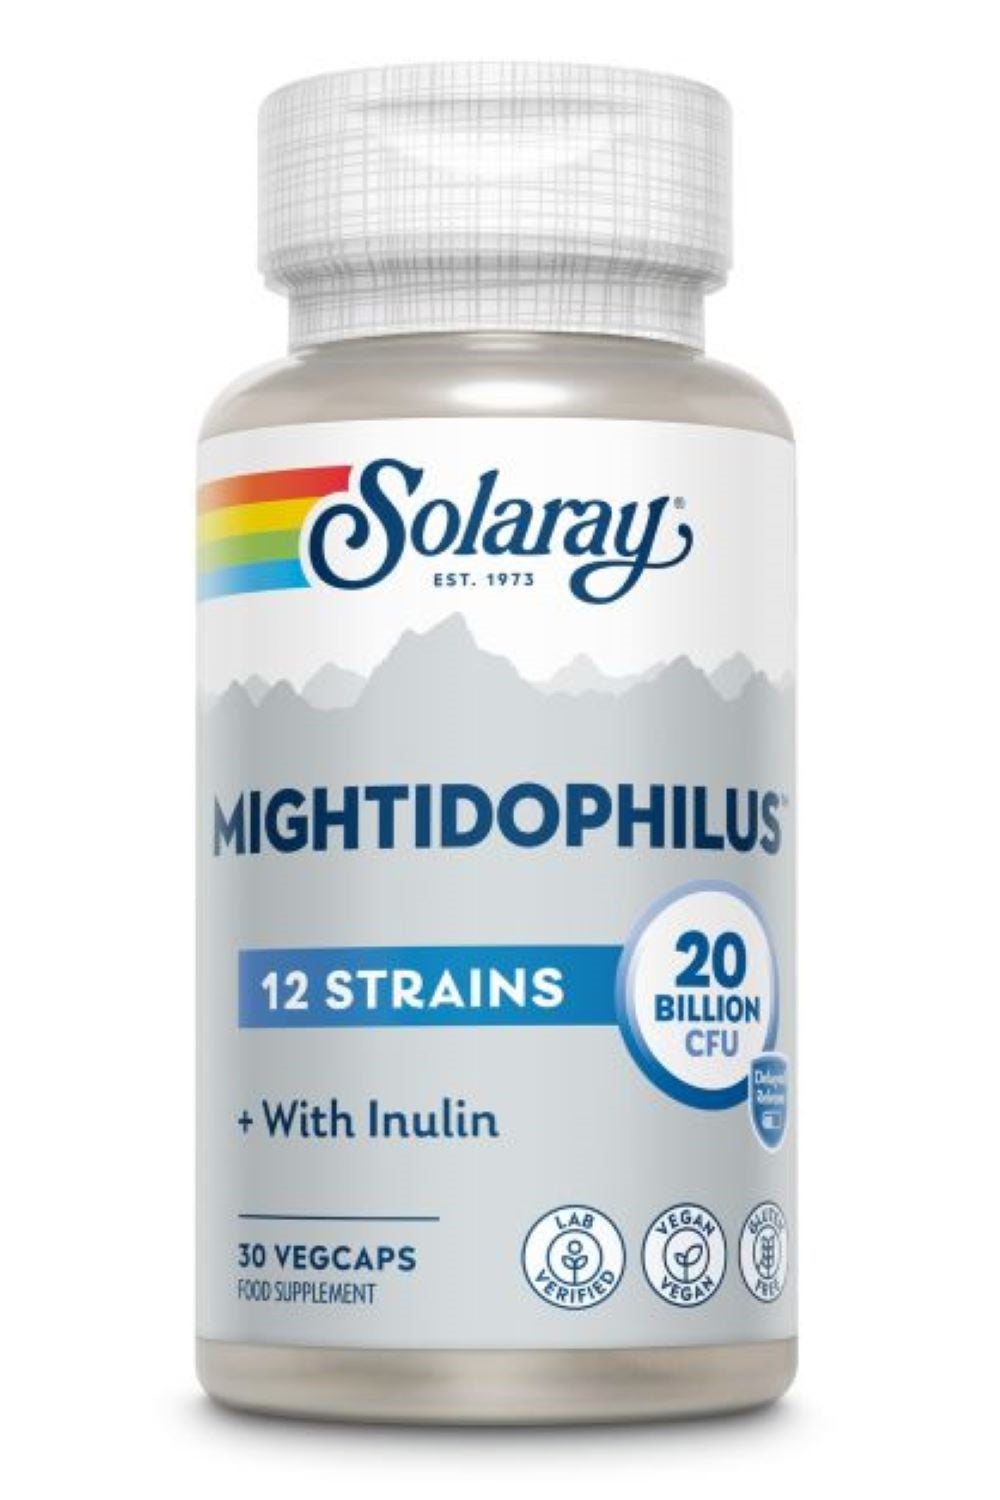 Solaray mightidophilus 12 ceppo formula 20 miliardi di cfu - 30 vegicaps